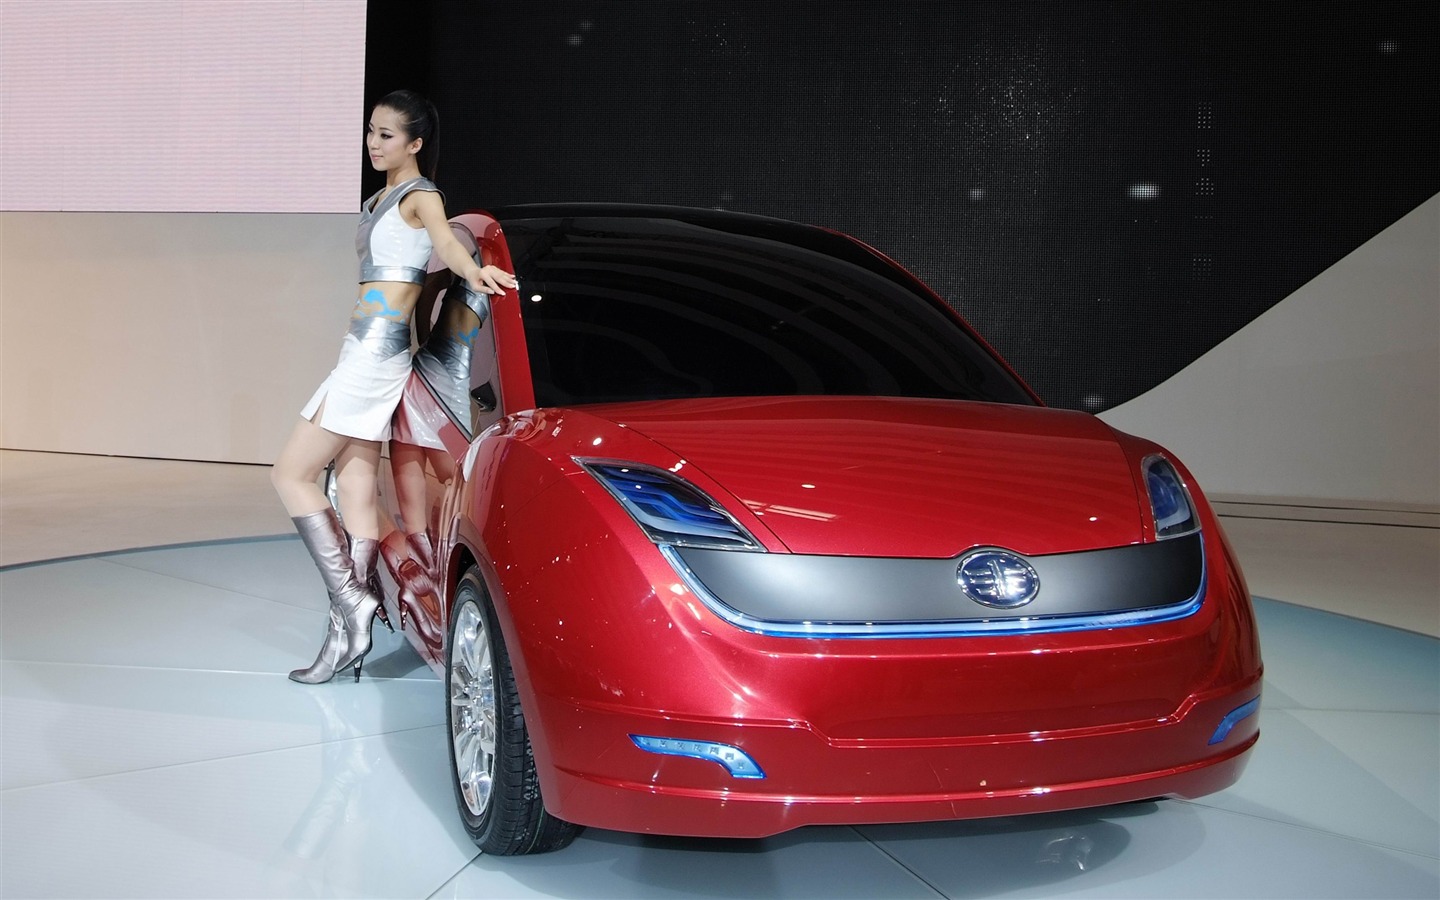 2010北京国际车展 香车美女 (螺纹钢作品)24 - 1440x900